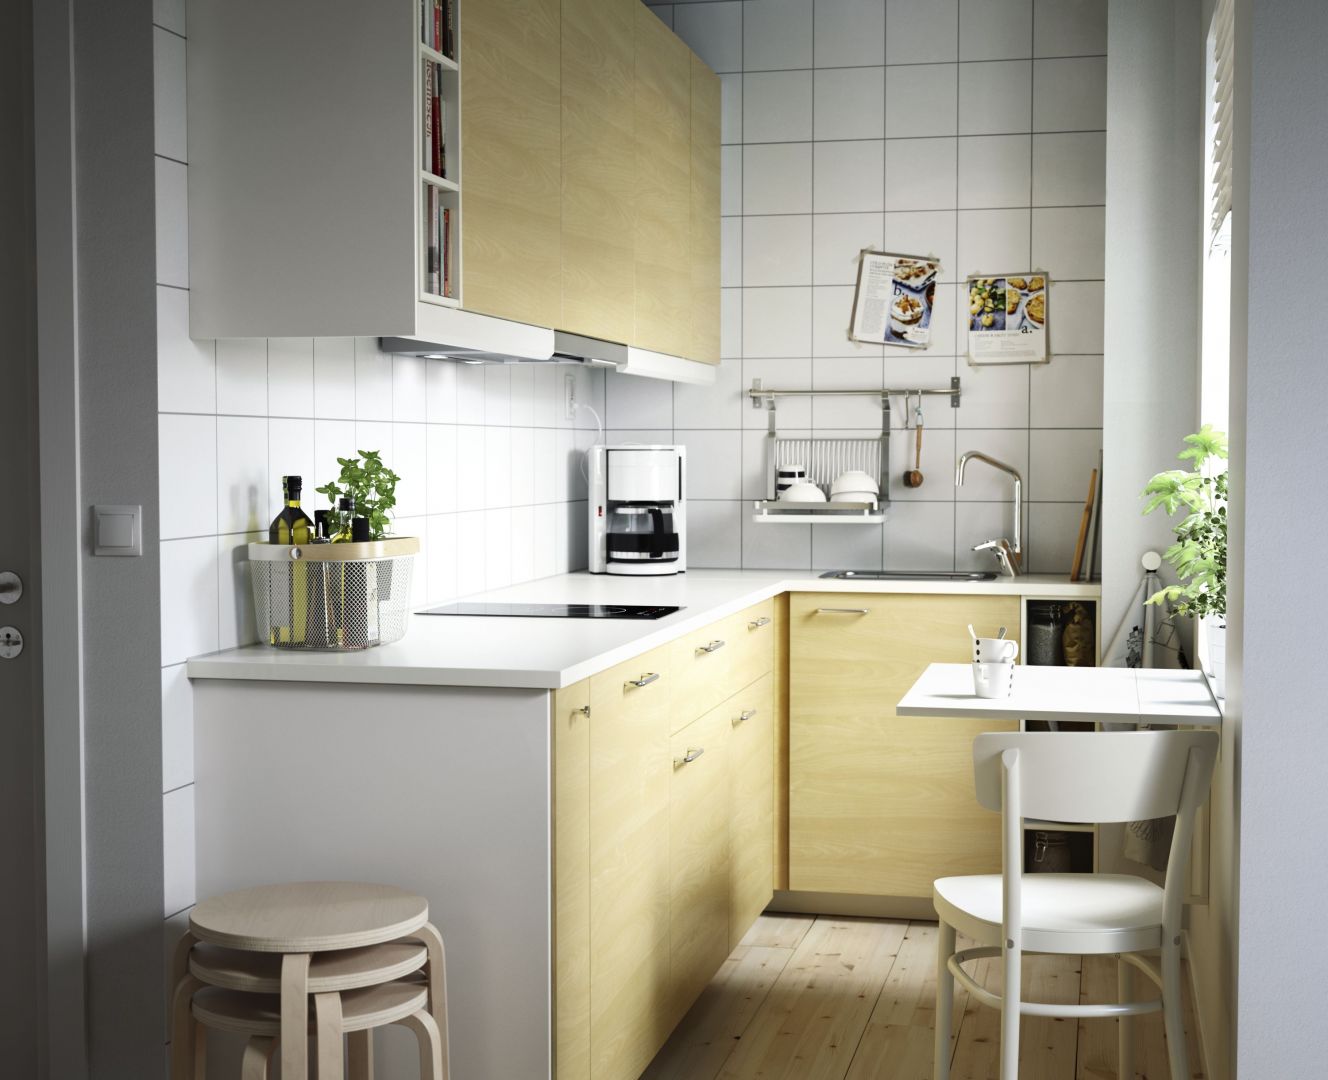 Małe kuchnie dobrze jest urządzić zabudową w kształcie litery L. Dzięki temu będzie ona funkcjonalna i estetyczna. Fot. IKEA